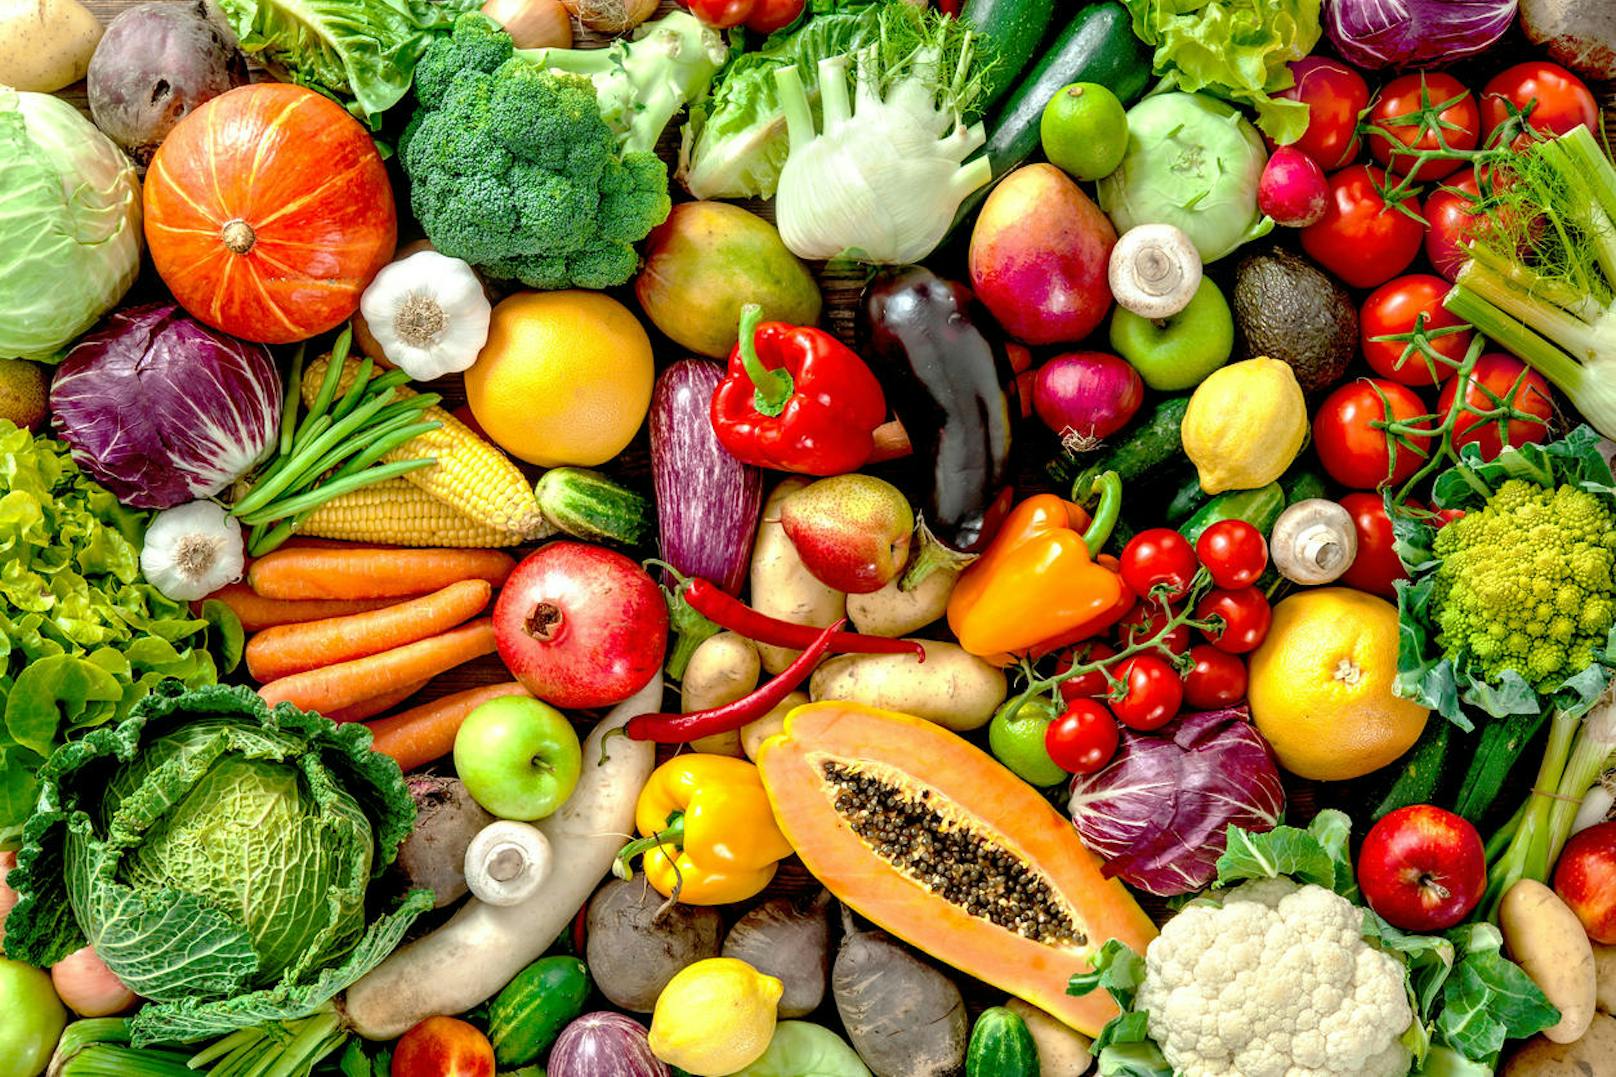 Obst und Gemüse: 58 Prozent